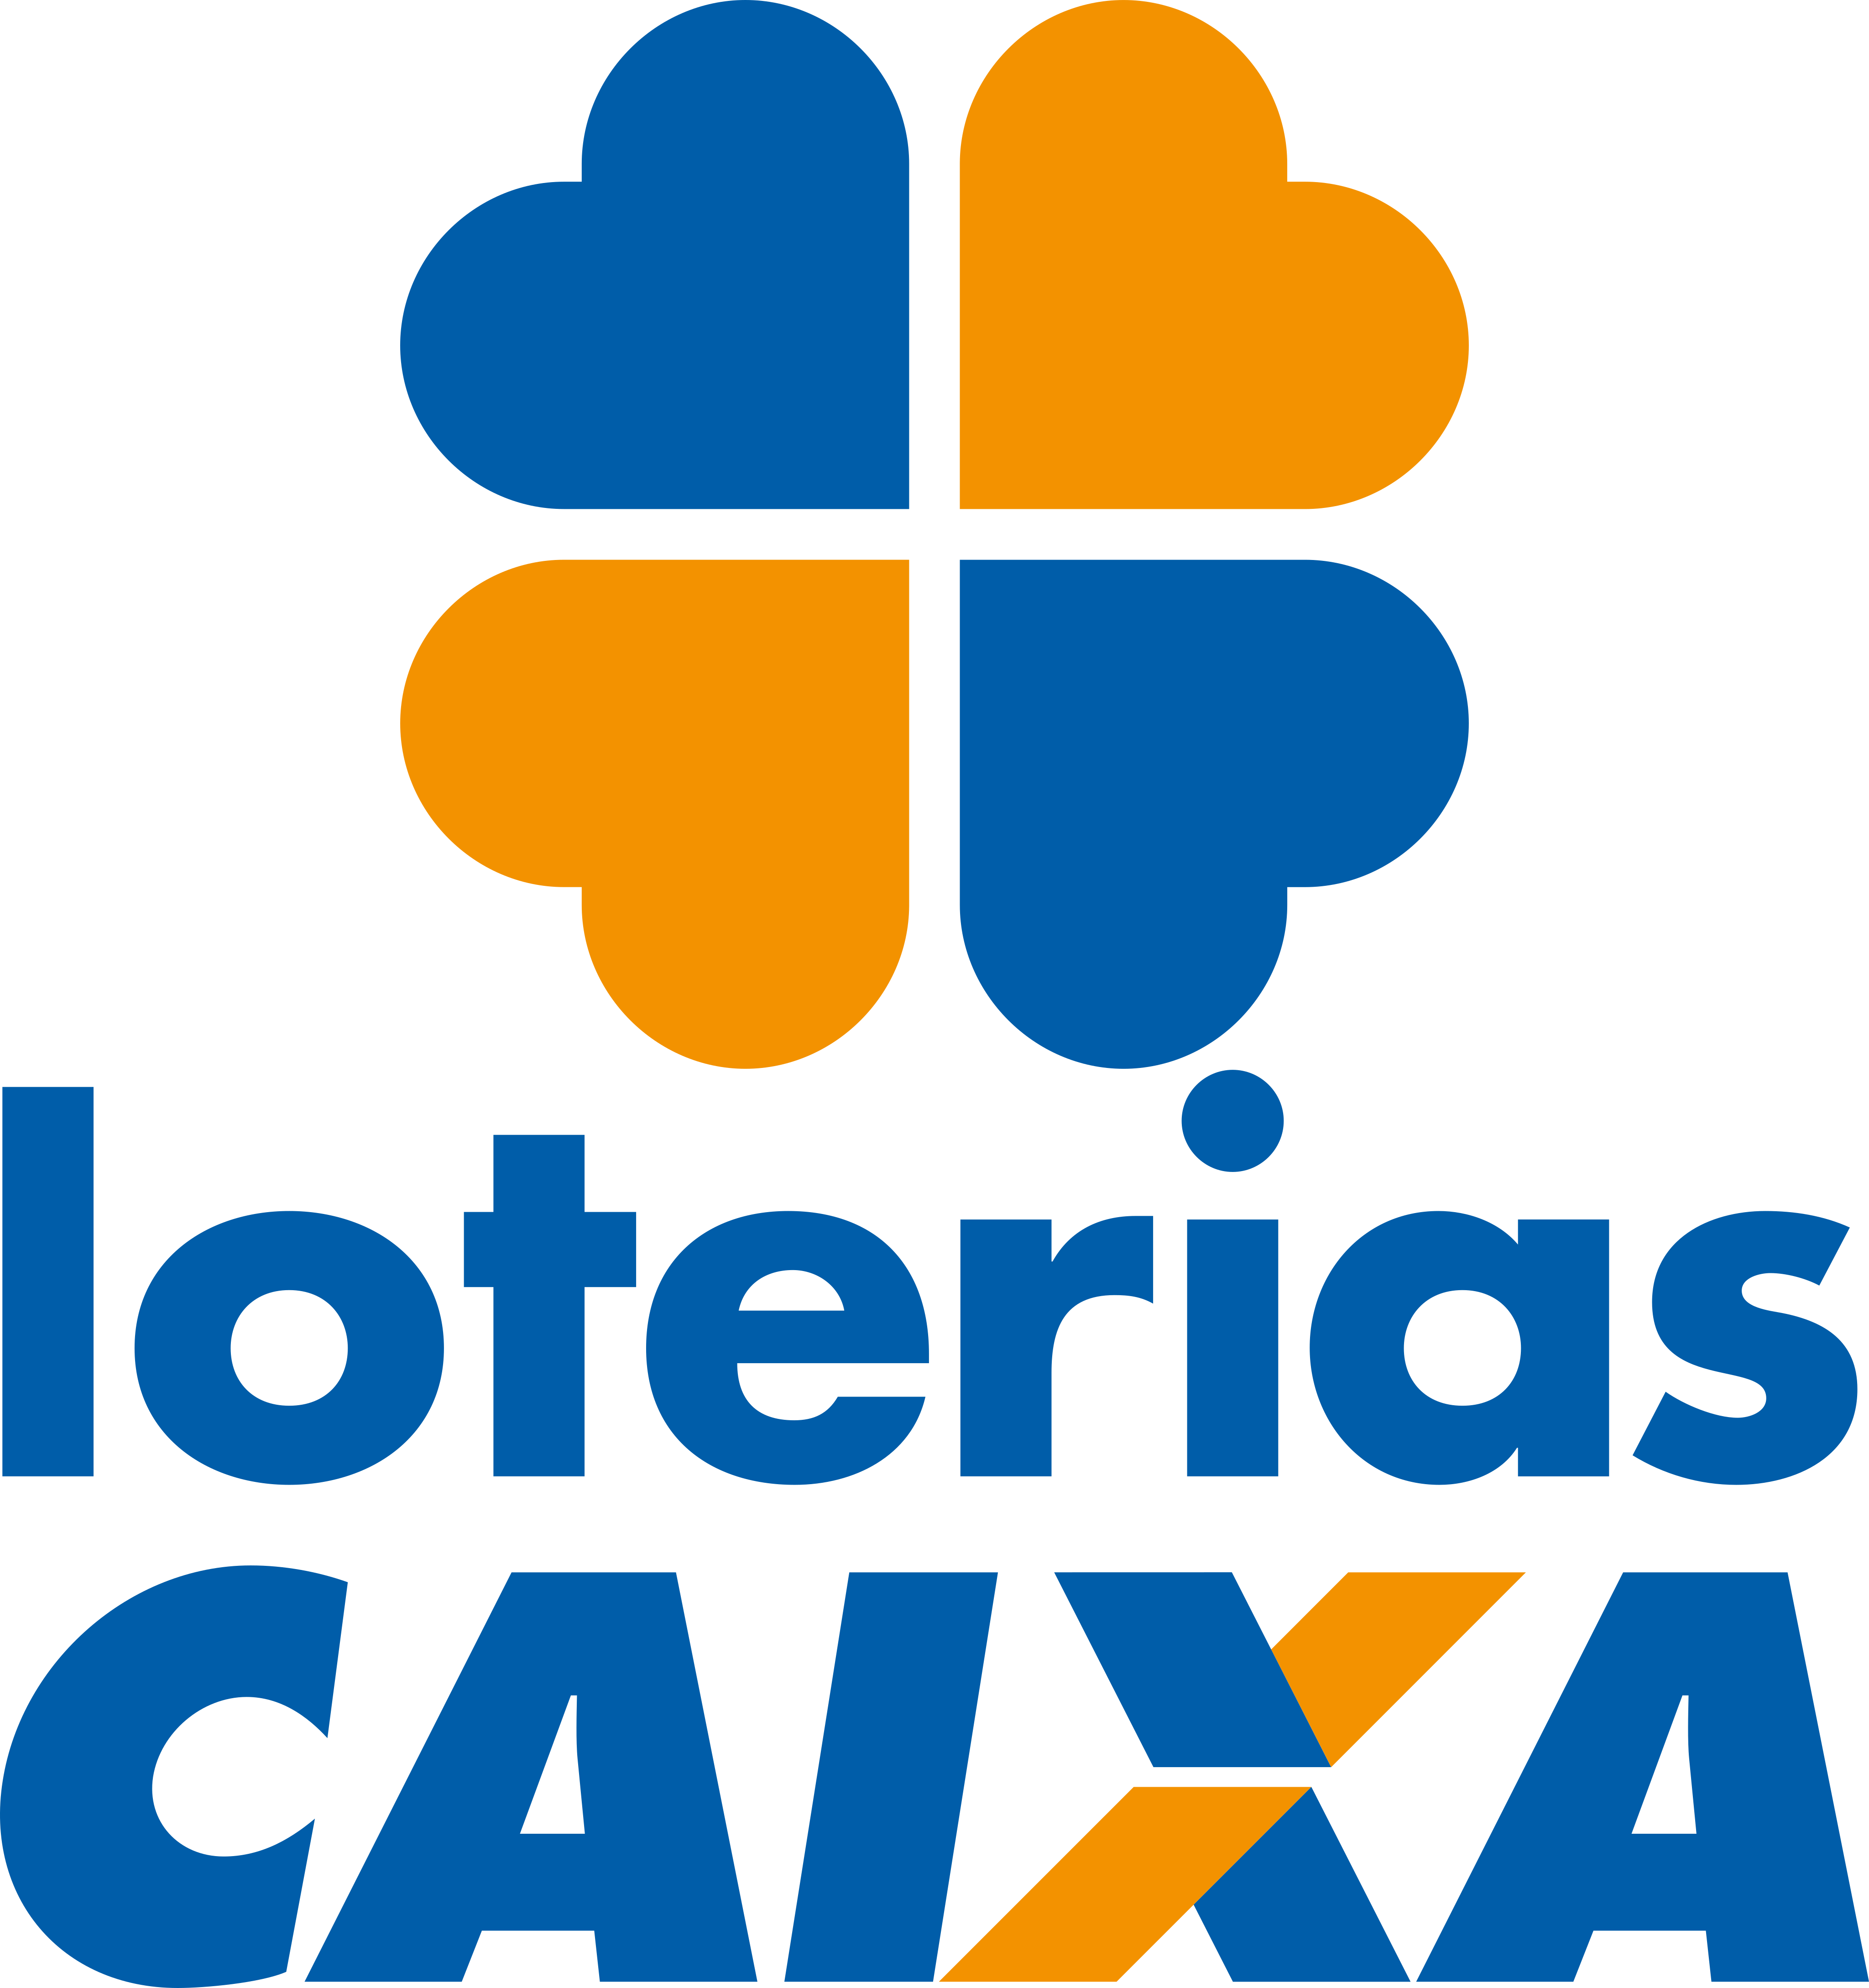 Loterias Caixa Logo.